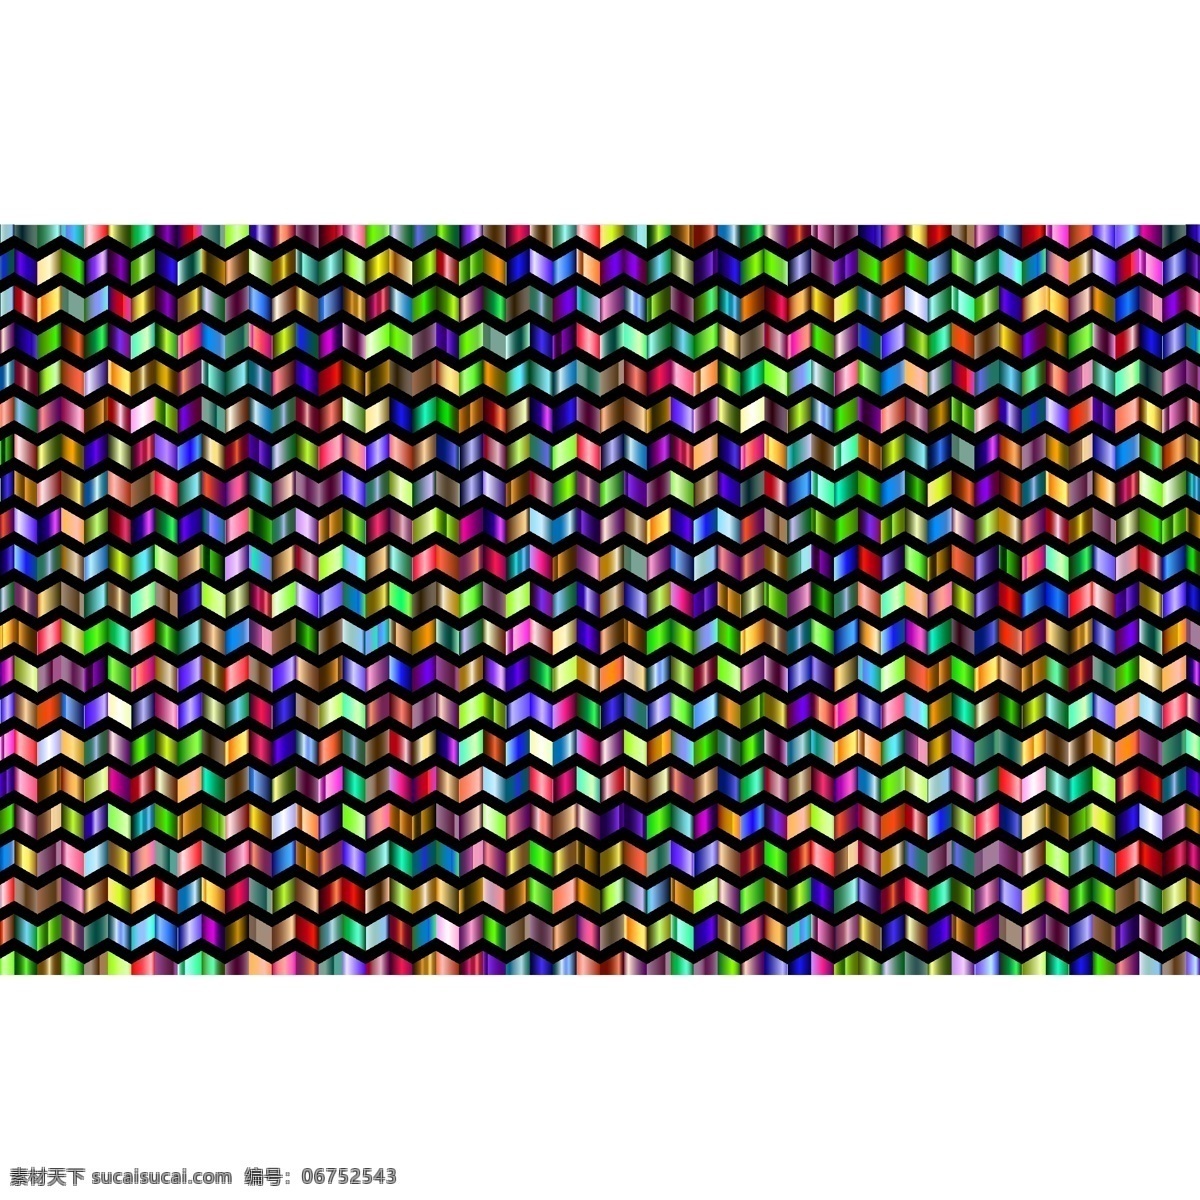 七彩条纹 装饰 模式 尖括号 抽象 几何 艺术 多彩 棱柱形 色 彩虹 数码印花 花纹循环 底纹边框 抽象底纹